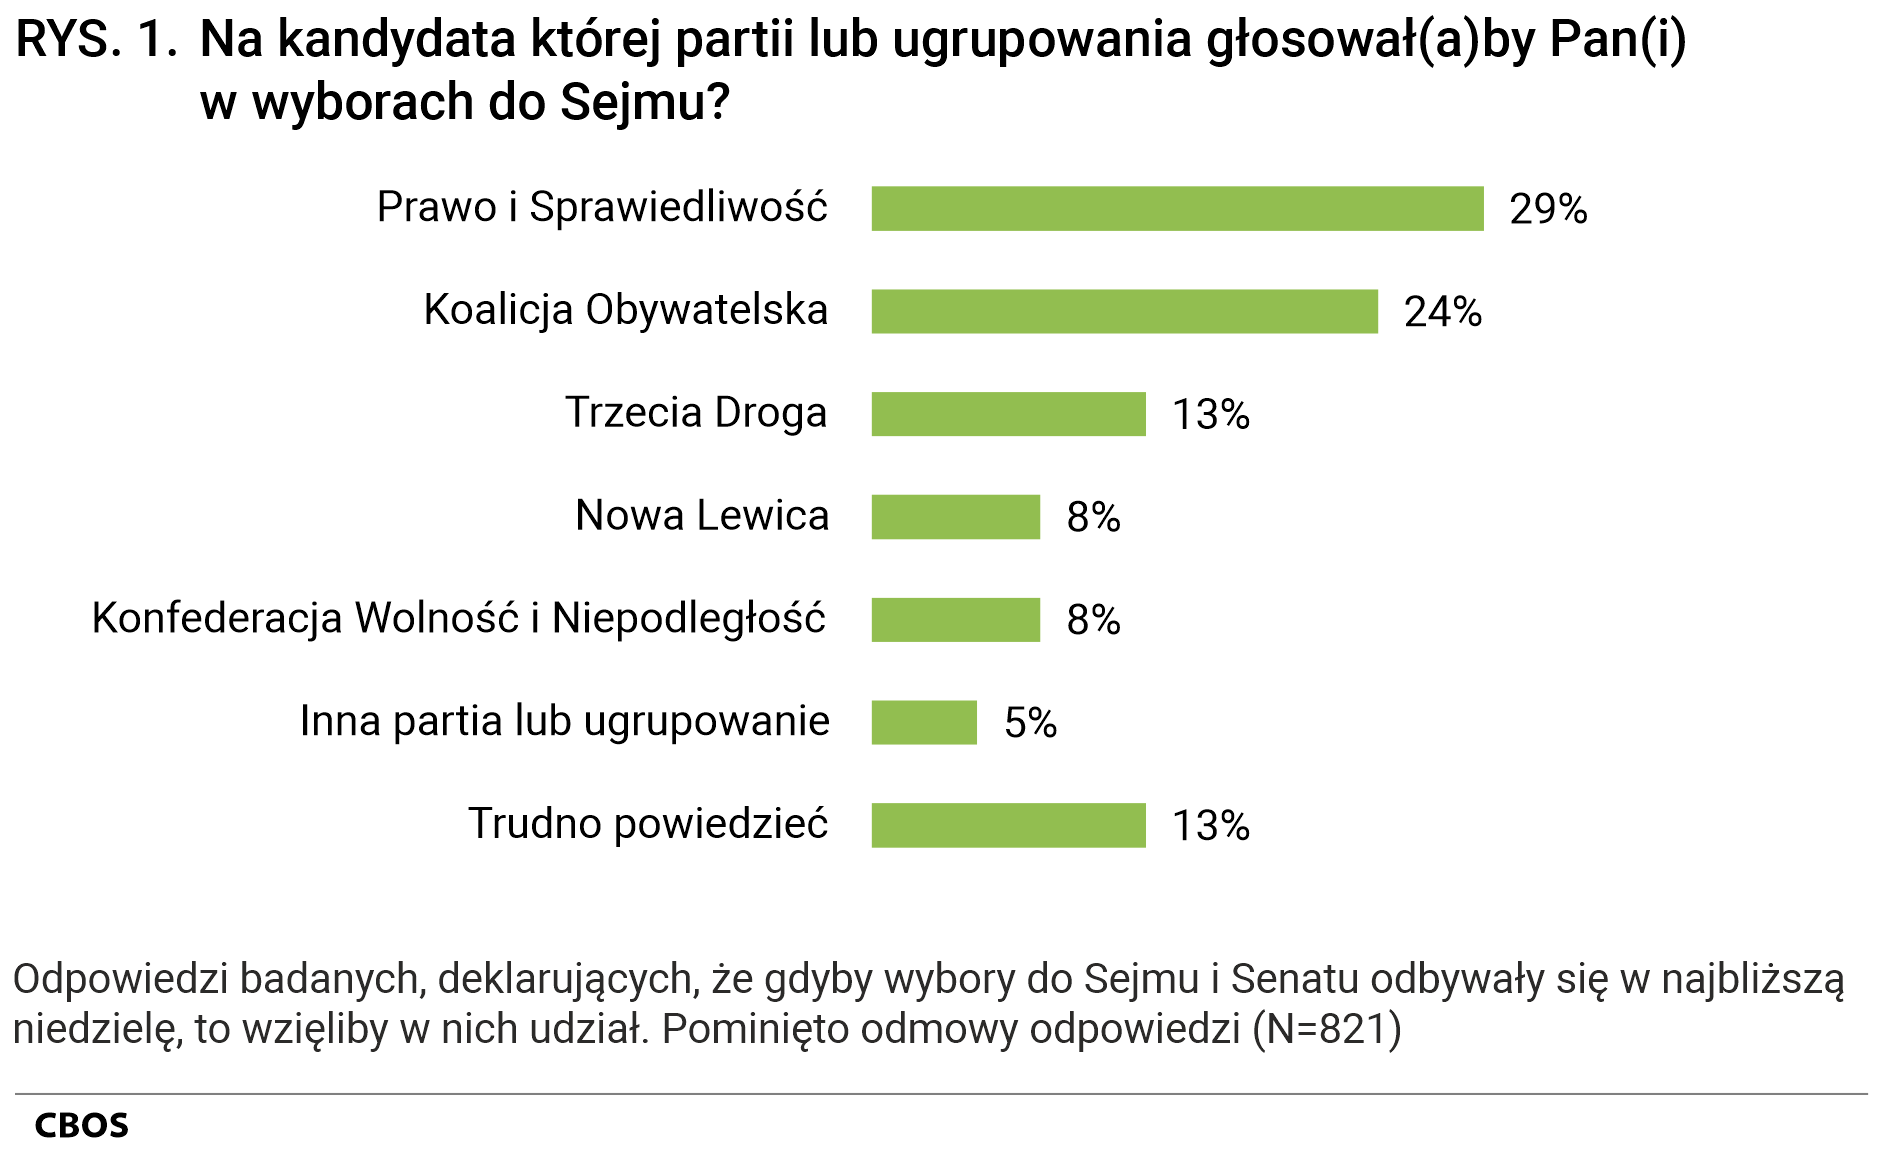 Rysunek 1 Na kandydata której partii lub ugrupowania głosowałby Pan(głosowałaby Pani) w wyborach do Sejmu? 	Odpowiedzi badanych, deklarujących, że gdyby wybory do Sejmu i Senatu odbywały się w najbliższą niedzielę, to wzięliby w nich udział. Pominięto odmowy odpowiedzi (N=821).  Prawo i Sprawiedliwość 29%, Koalicja Obywatelska 24%, Trzecia Droga 13%, Nowa Lewica 8%, Konfederacja Wolność i Niepodległość 8%, Inna partia lub ugrupowanie 5%, Trudno powiedzieć 13%.